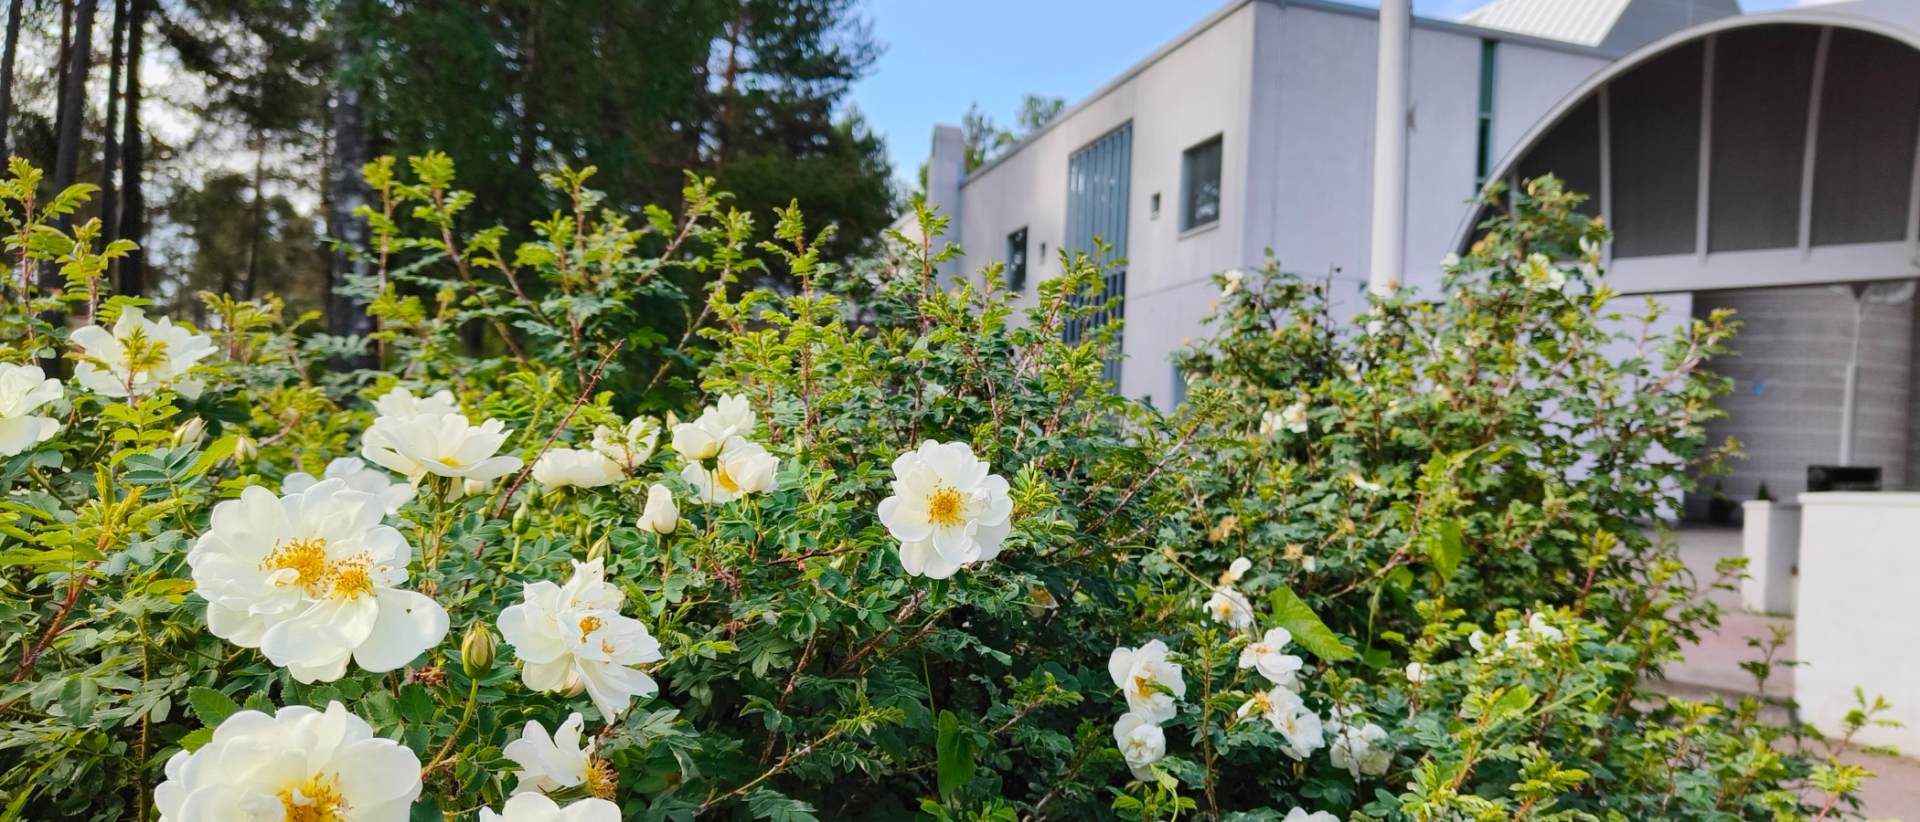 Myllypuron kirkko kesällä. etualalla valkoisia ruusuja